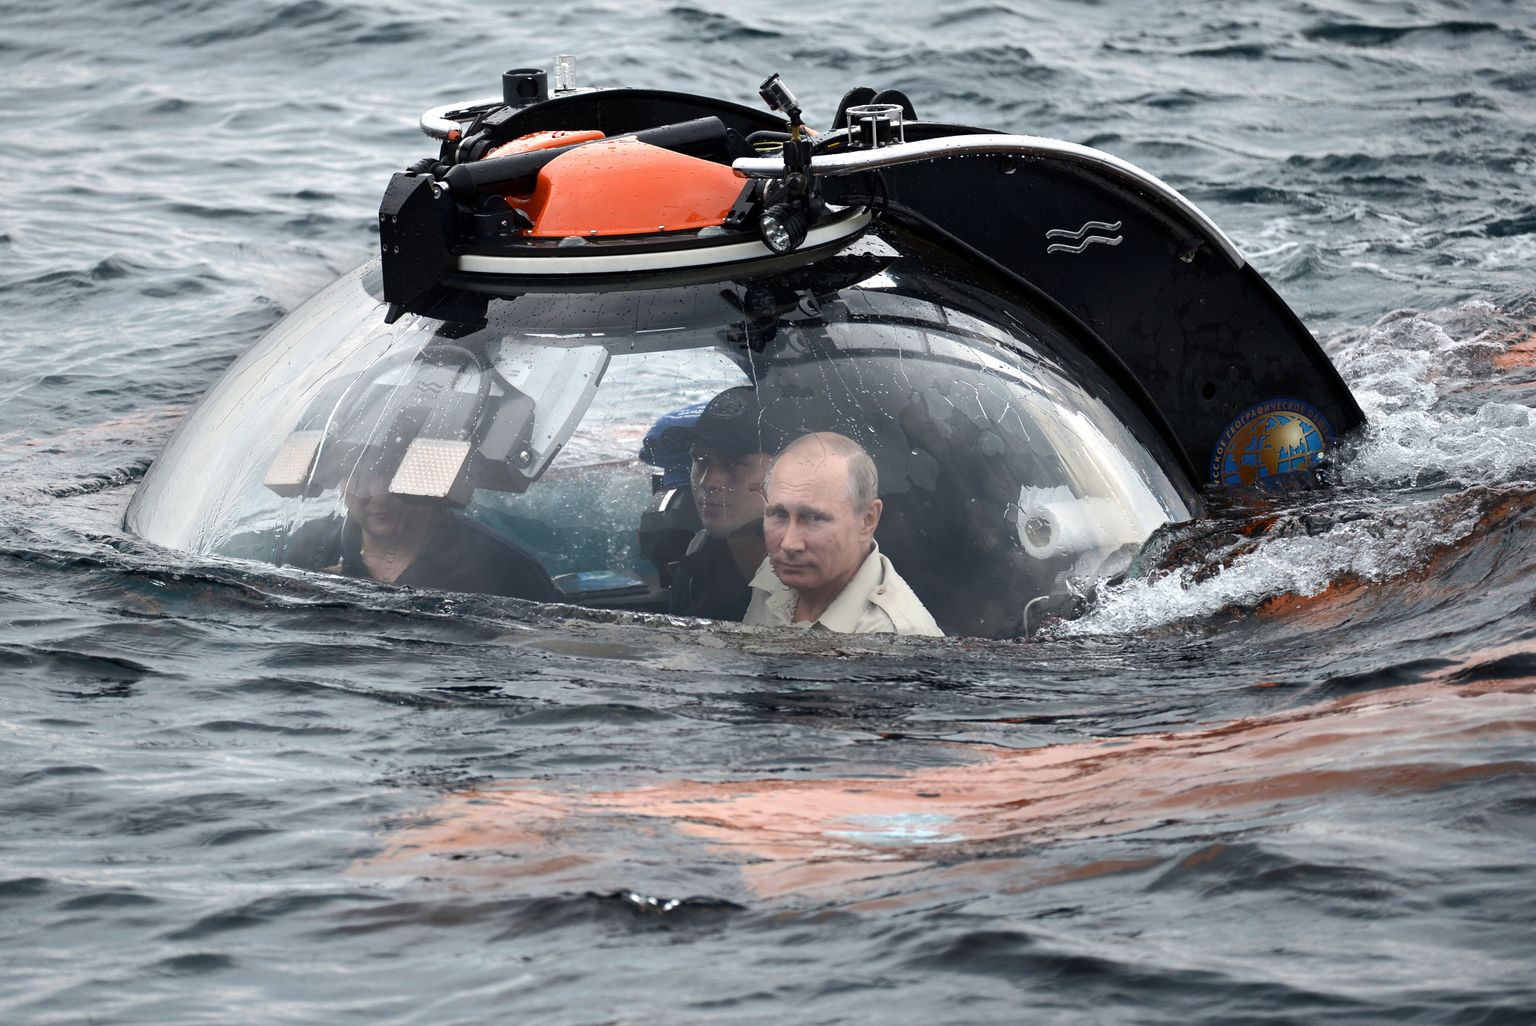 Venemaa president Vladimir Putin 18. juulil 2015 koos kaaskonnaga batüskaafis sukeldumas Mustas meres Sevastoopoli lähedal 83 meetri sügavusele, et näha iidset uppunud laeva